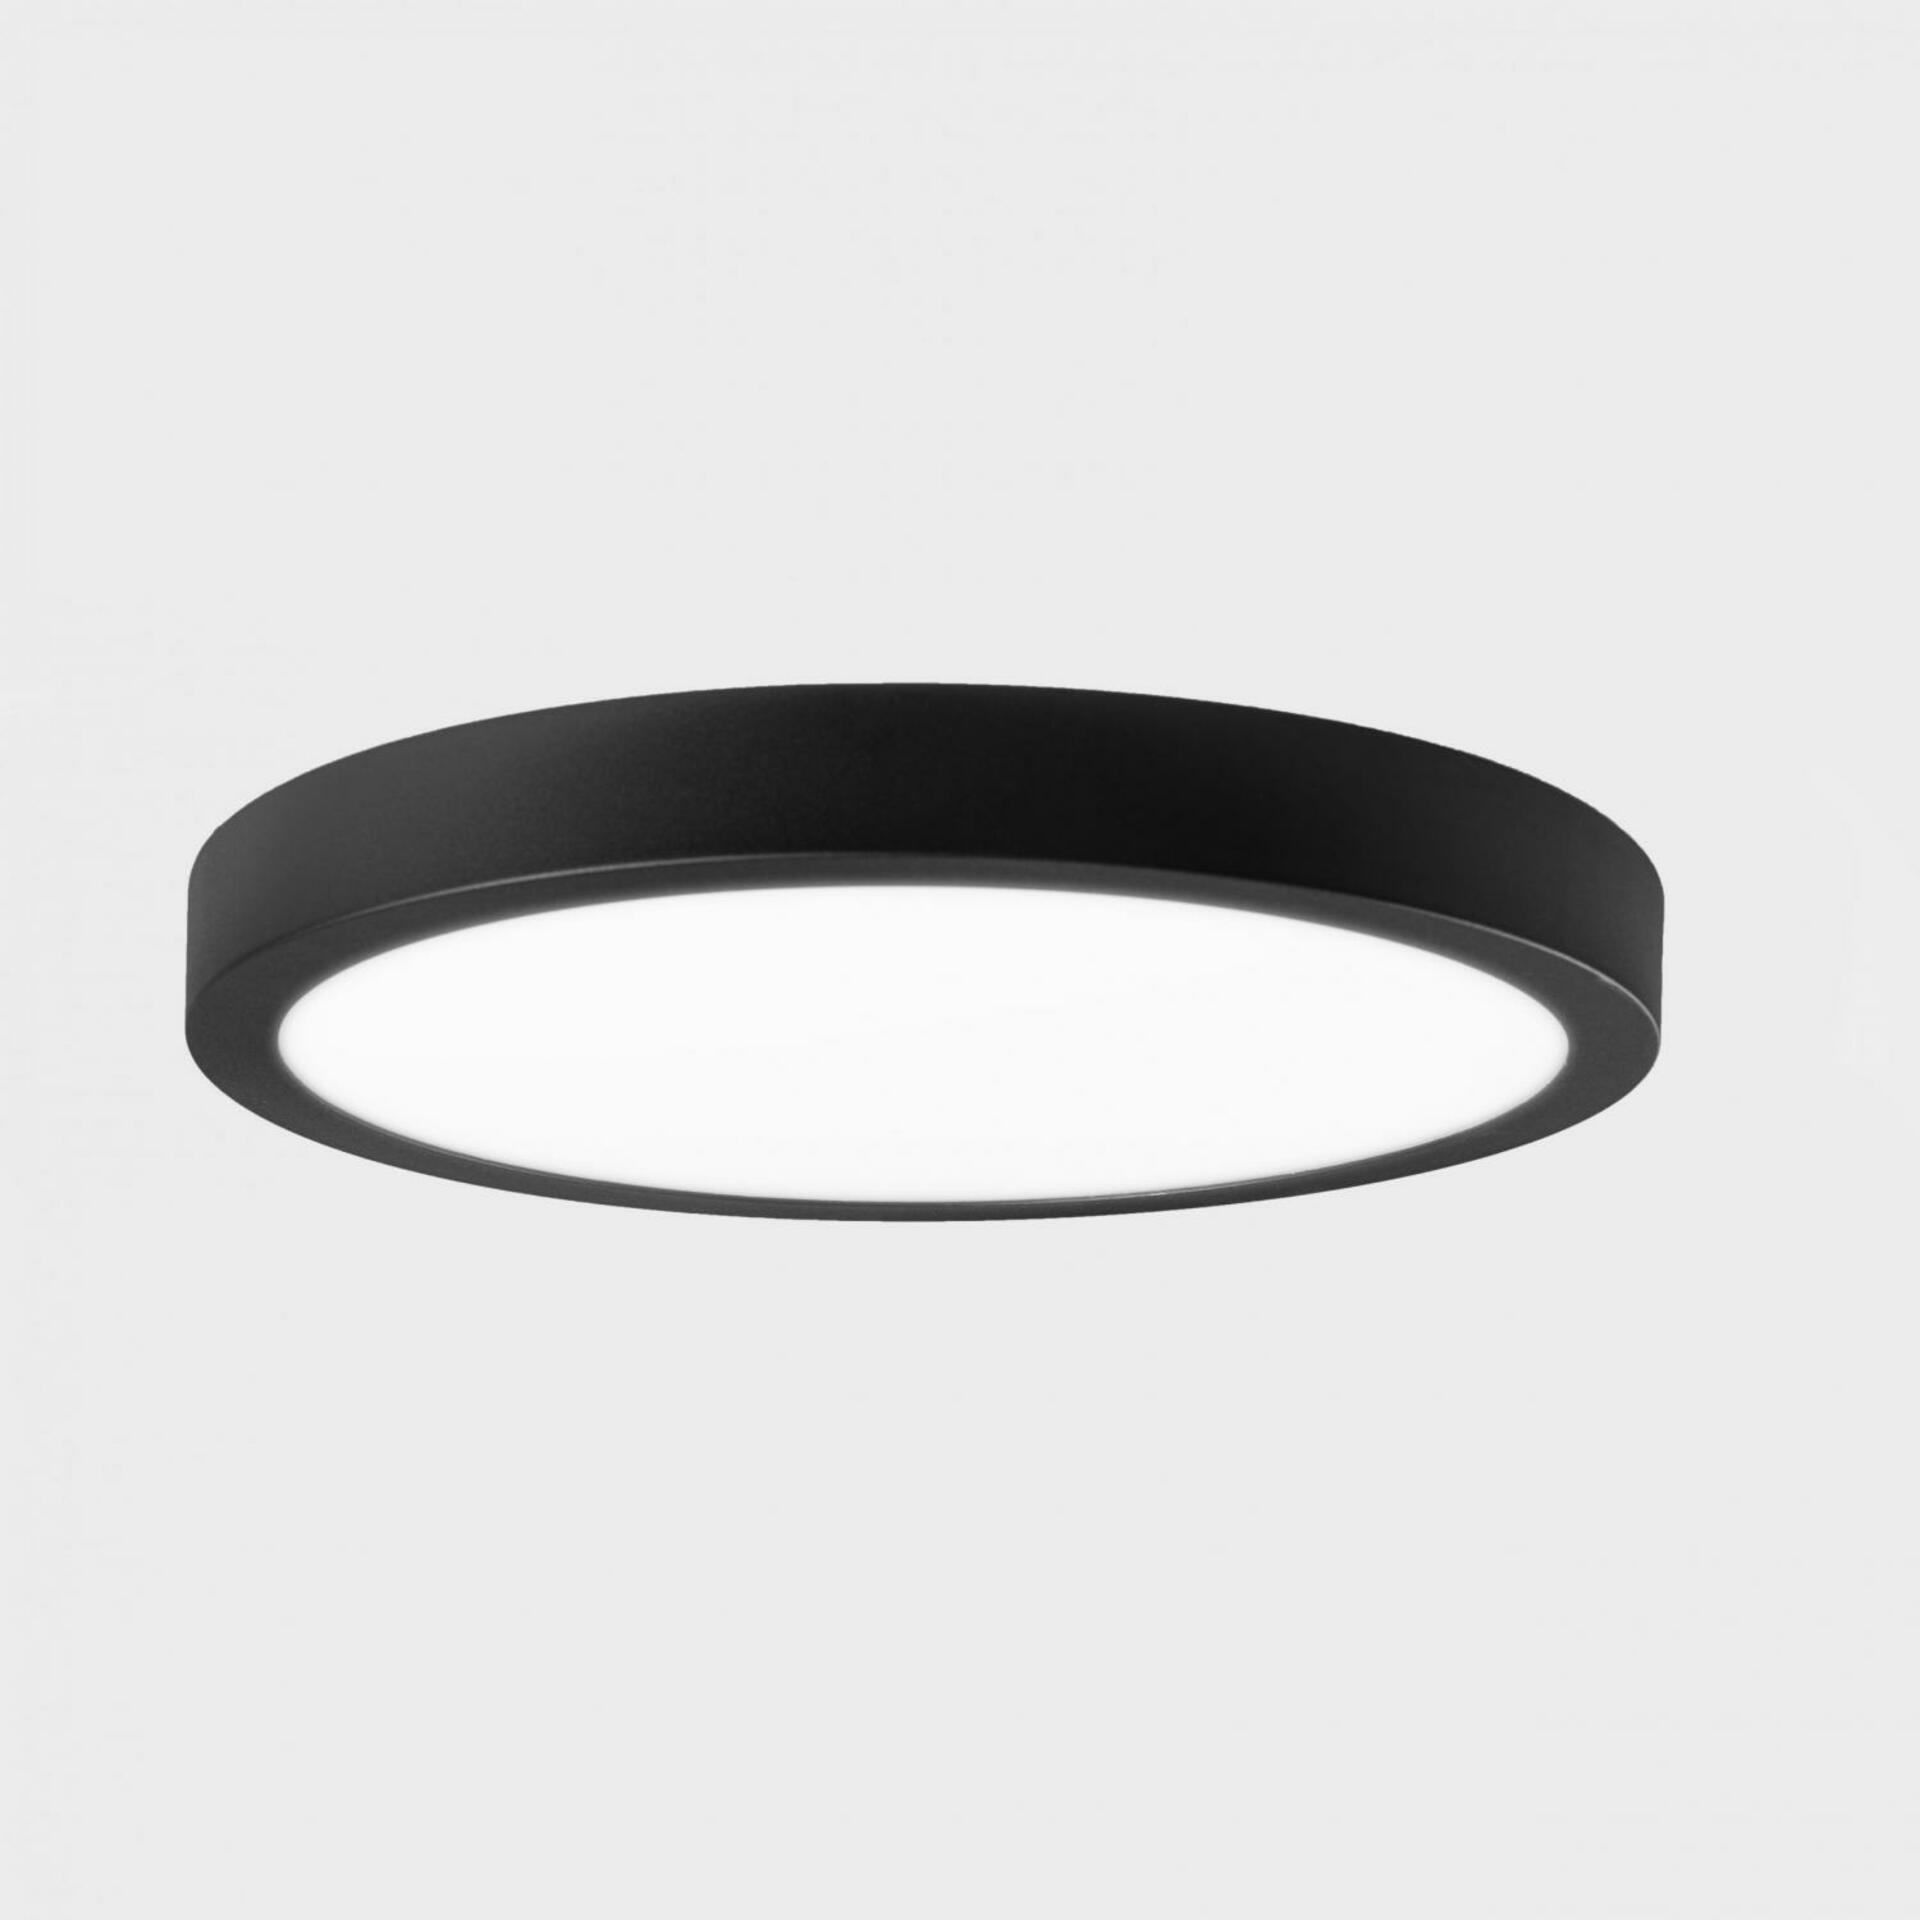 KOHL LIGHTING KOHL-Lighting DISC SLIM stropní svítidlo pr. 600 mm černá 56 W CRI 80 3000K Non-Dimm